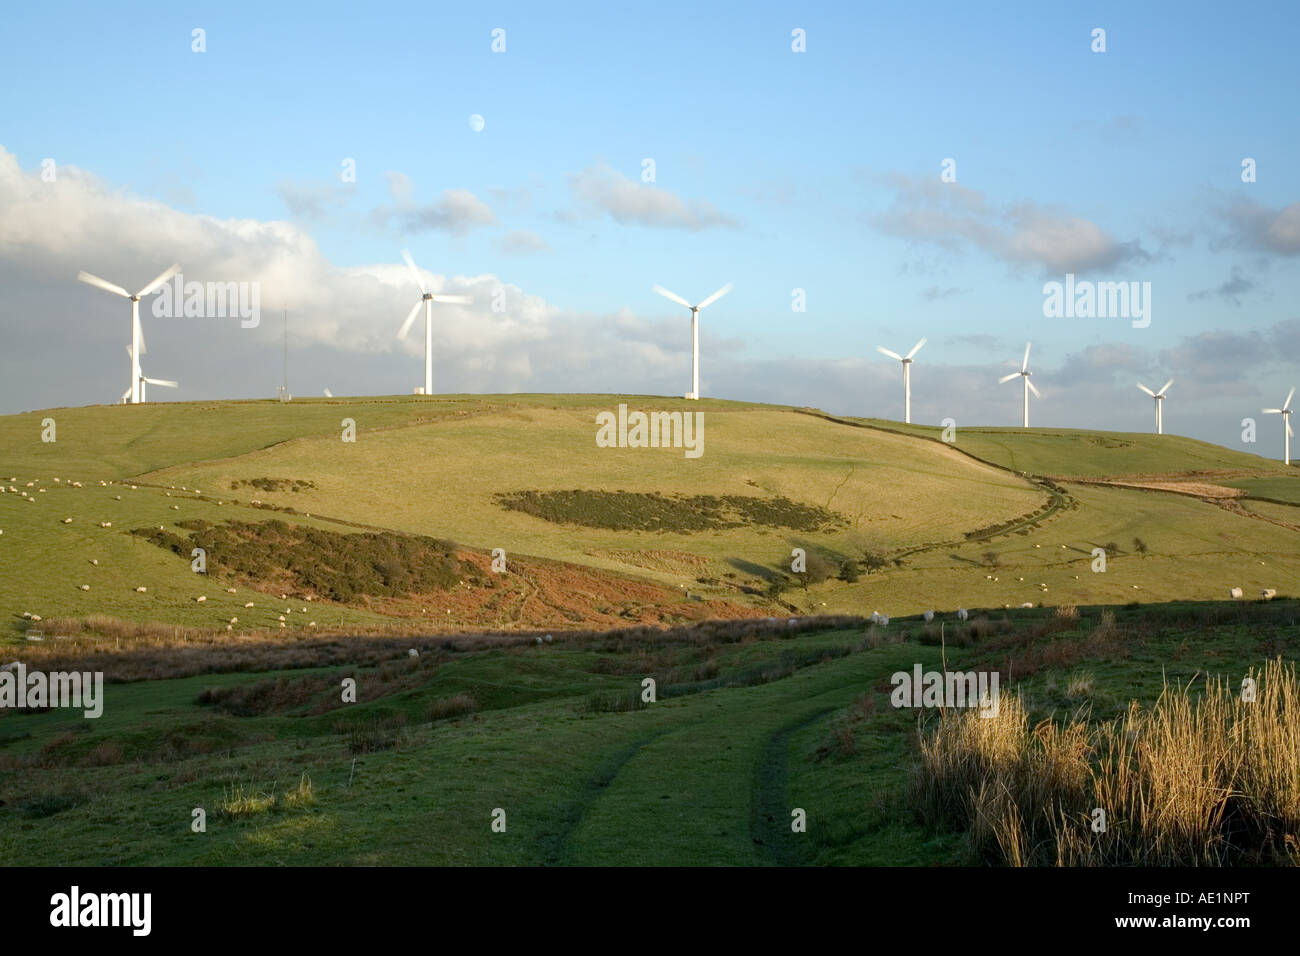 Ländliche Hügel mit einer Reihe von Windturbinen und Weideflächen Schafe gegen einen blauen Himmel mit etwas Wolke und die mond Stockfoto